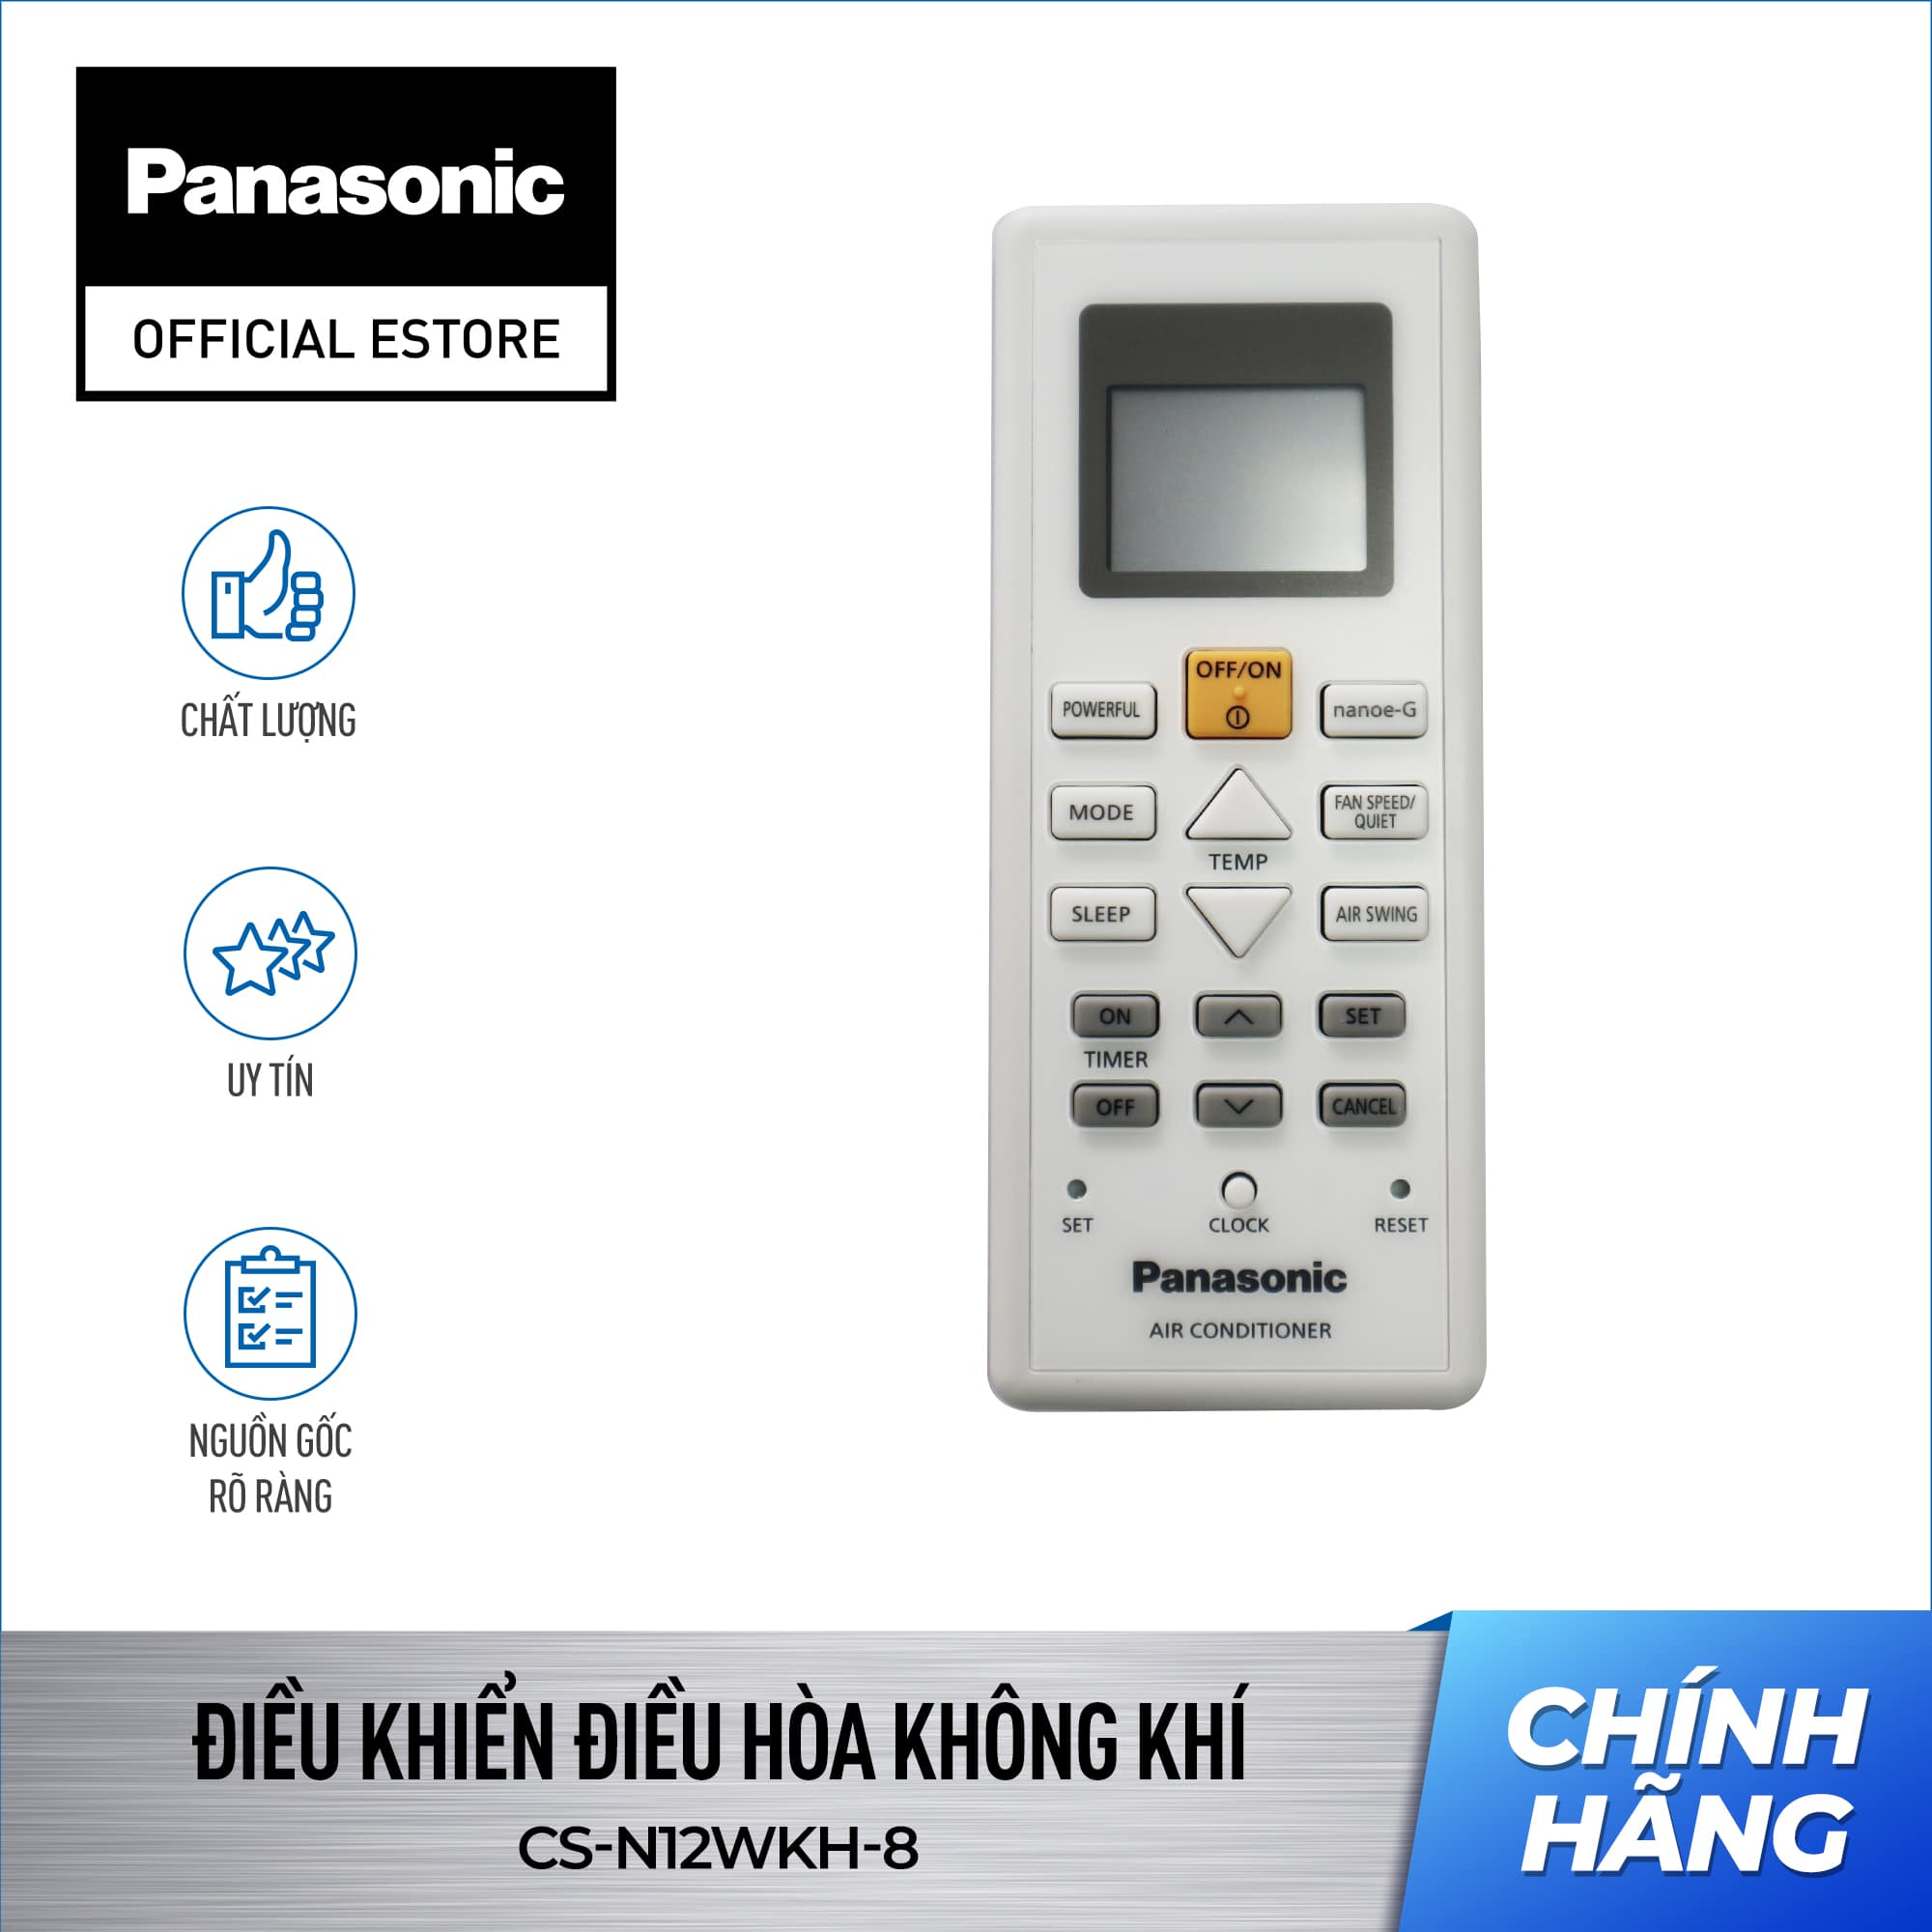 Điều khiển Máy lạnh/ Điều hòa Panasonic CS-N9WKH - Remote Panasonic. Model máy đi kèm sản phẩm KH vui lòng xem ở phần mô tả ACXA75C18010